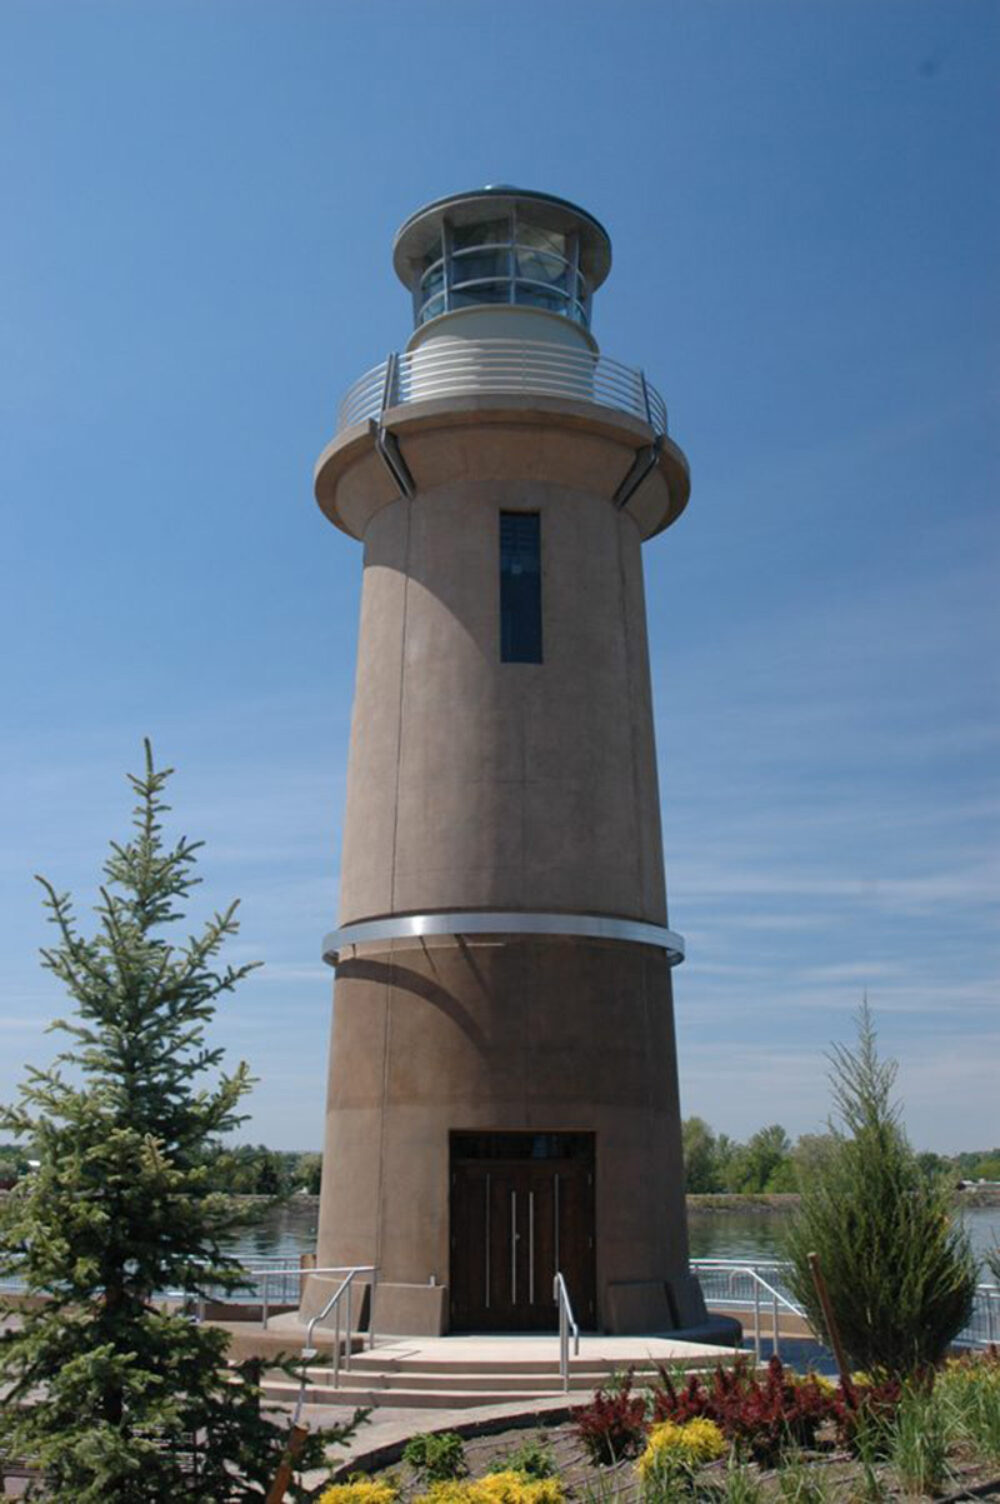 The Clover Island Lighthouse